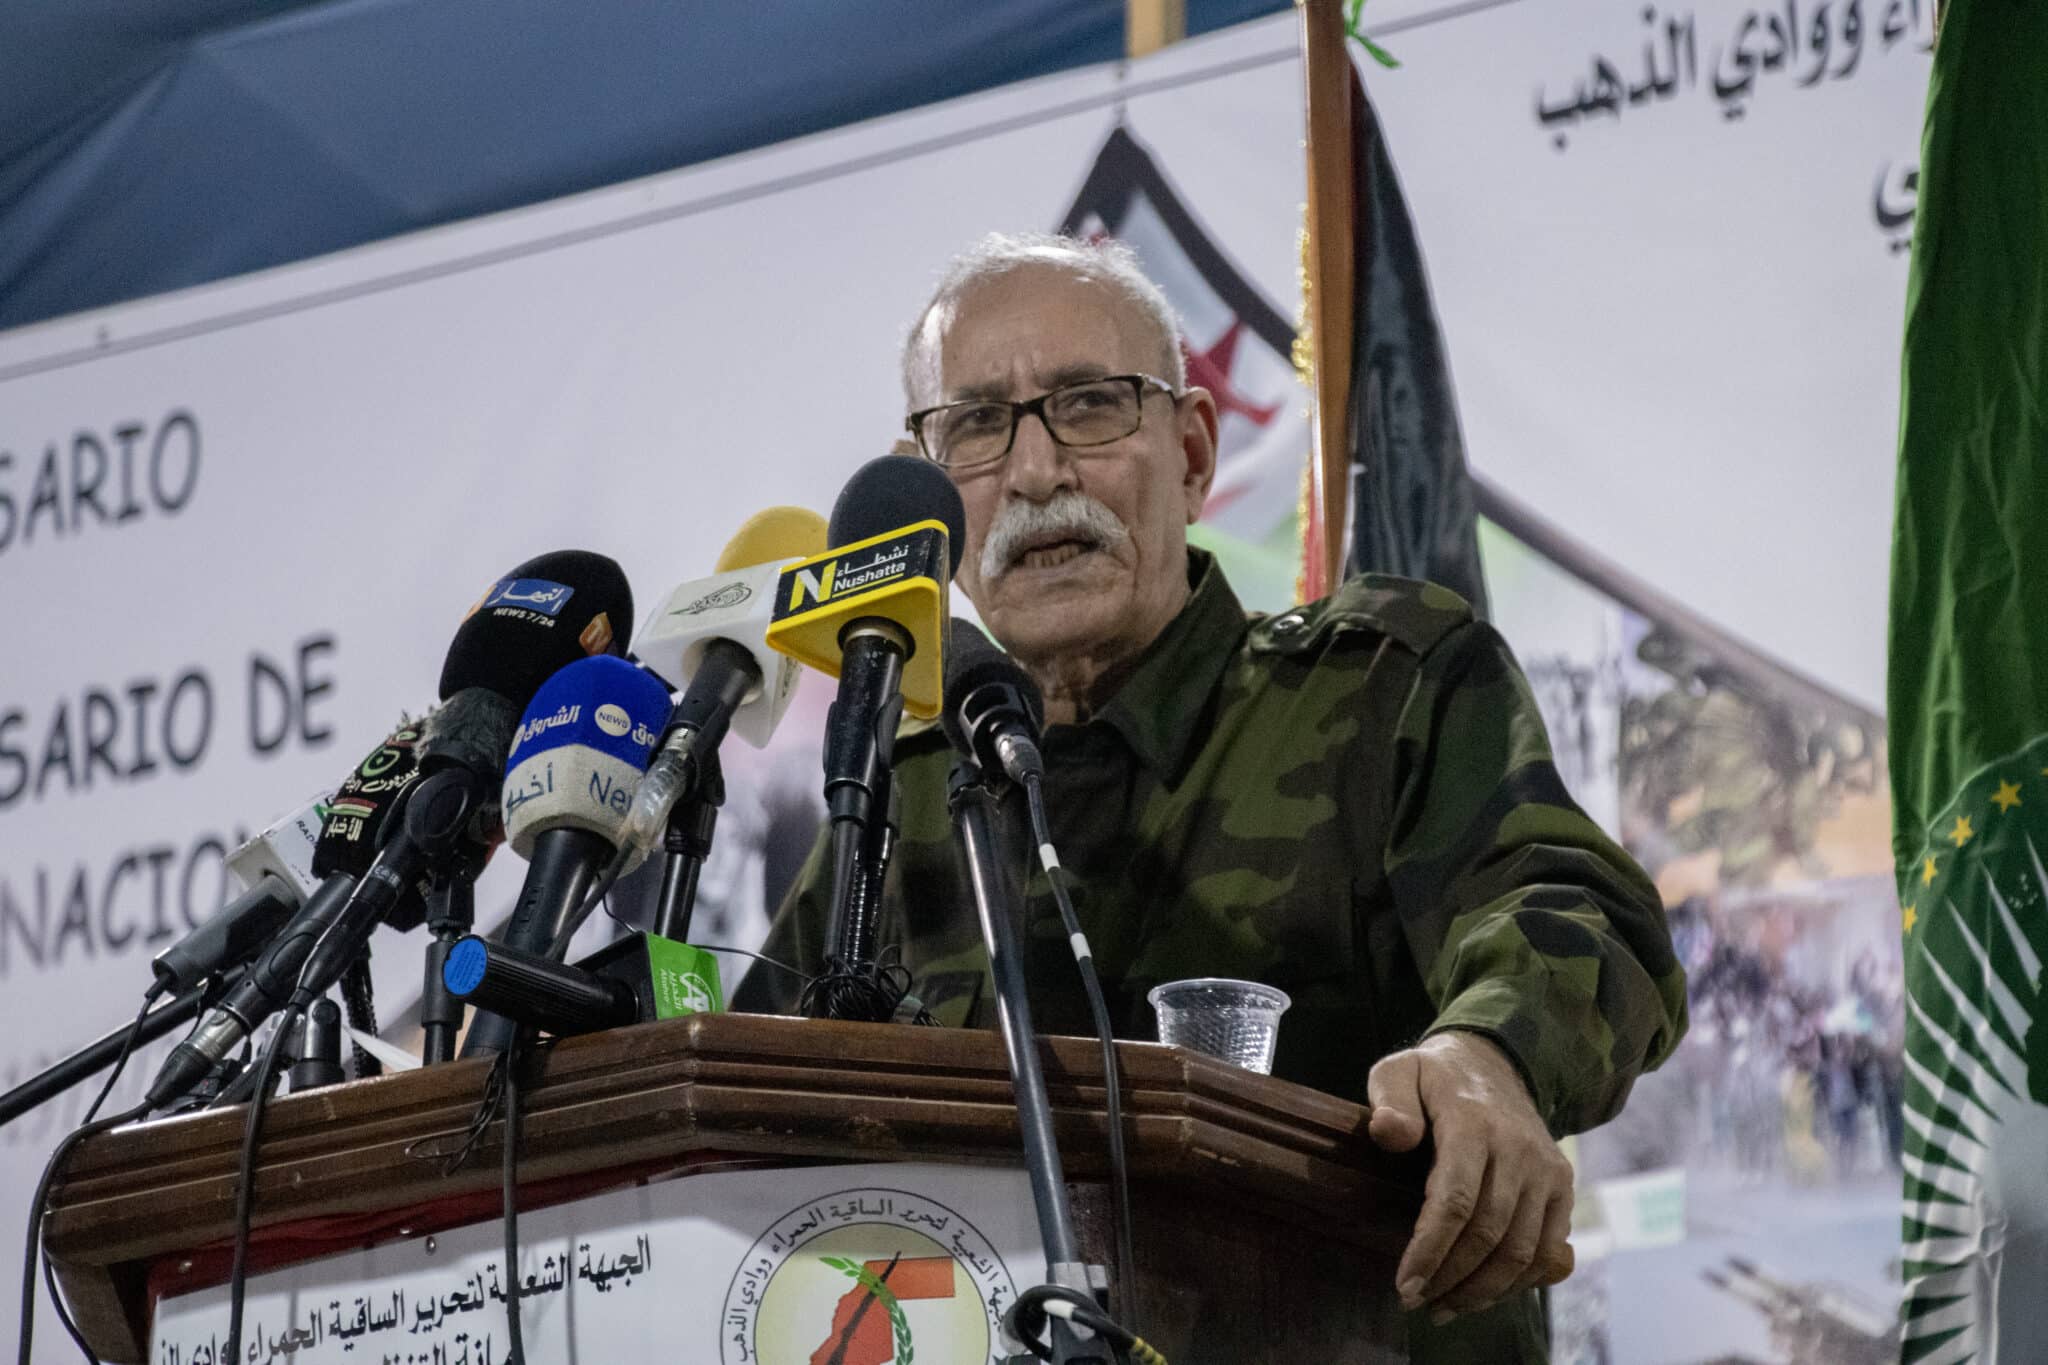 El líder del Frente Polisario, Brahim Ghali, durante su discurso este martes en el campamento de Dajla